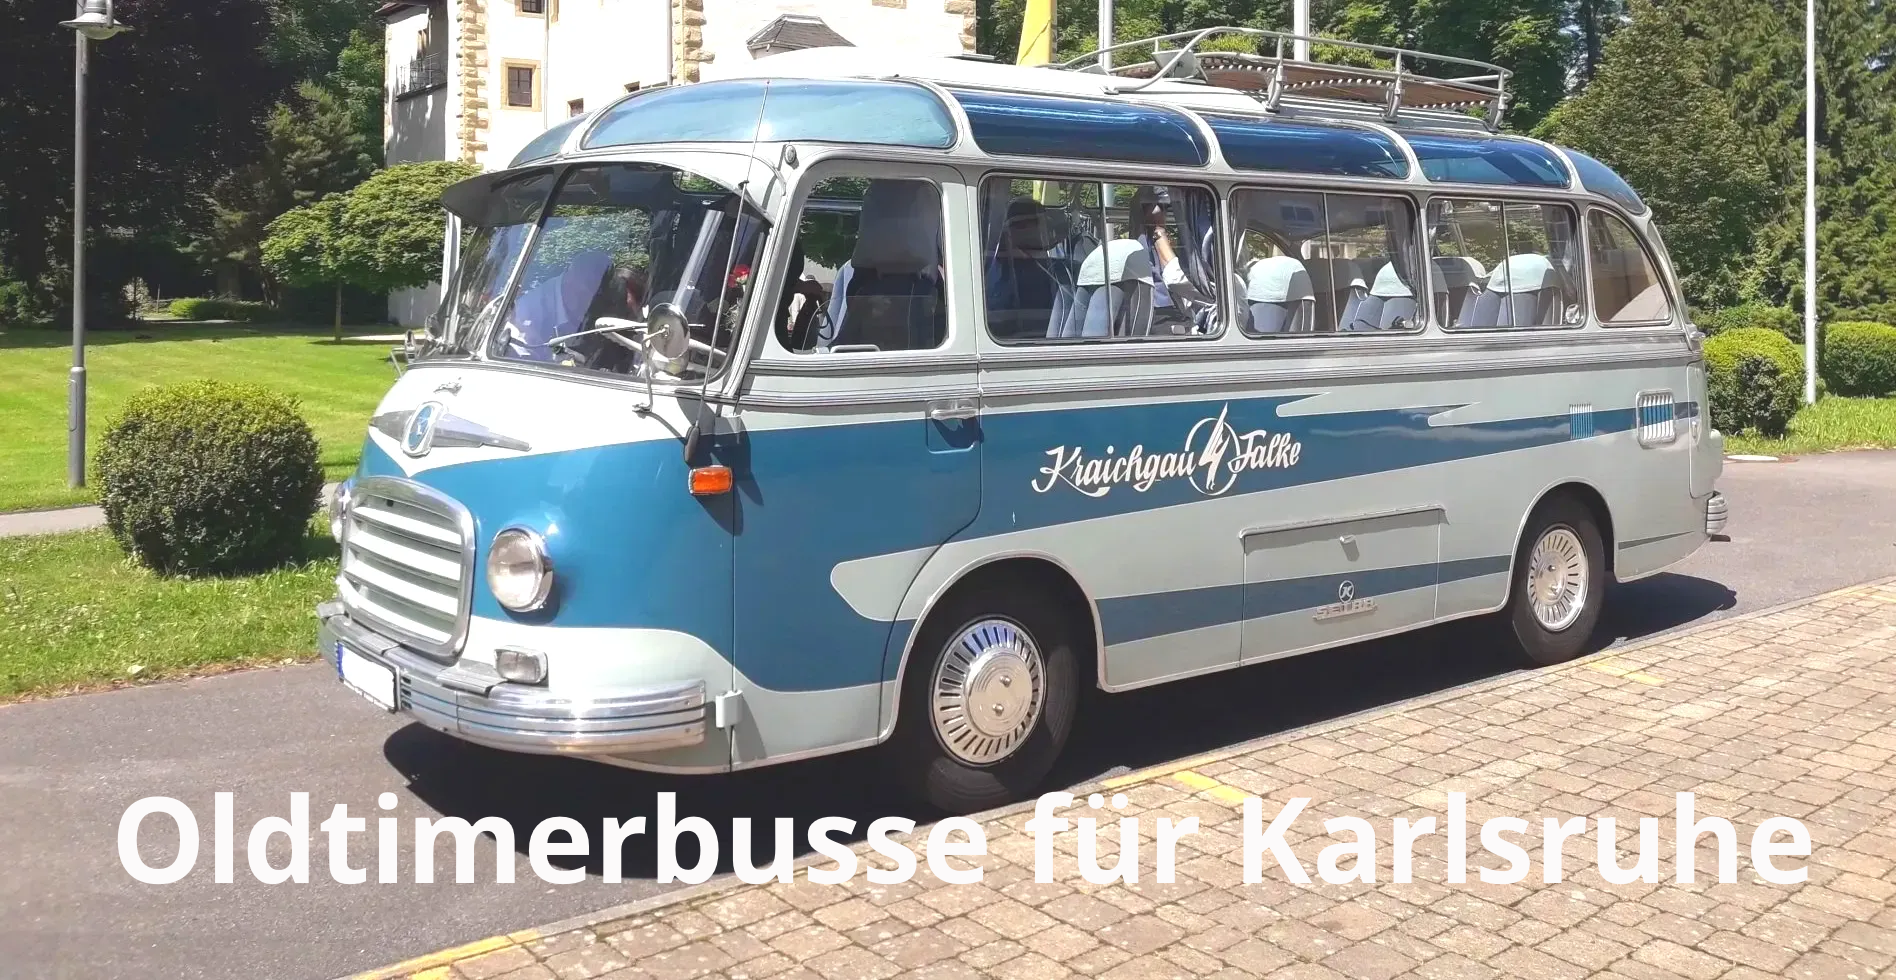 Oldtimerbus mieten Karlsruhe Hochzeit Hochzeitsauto